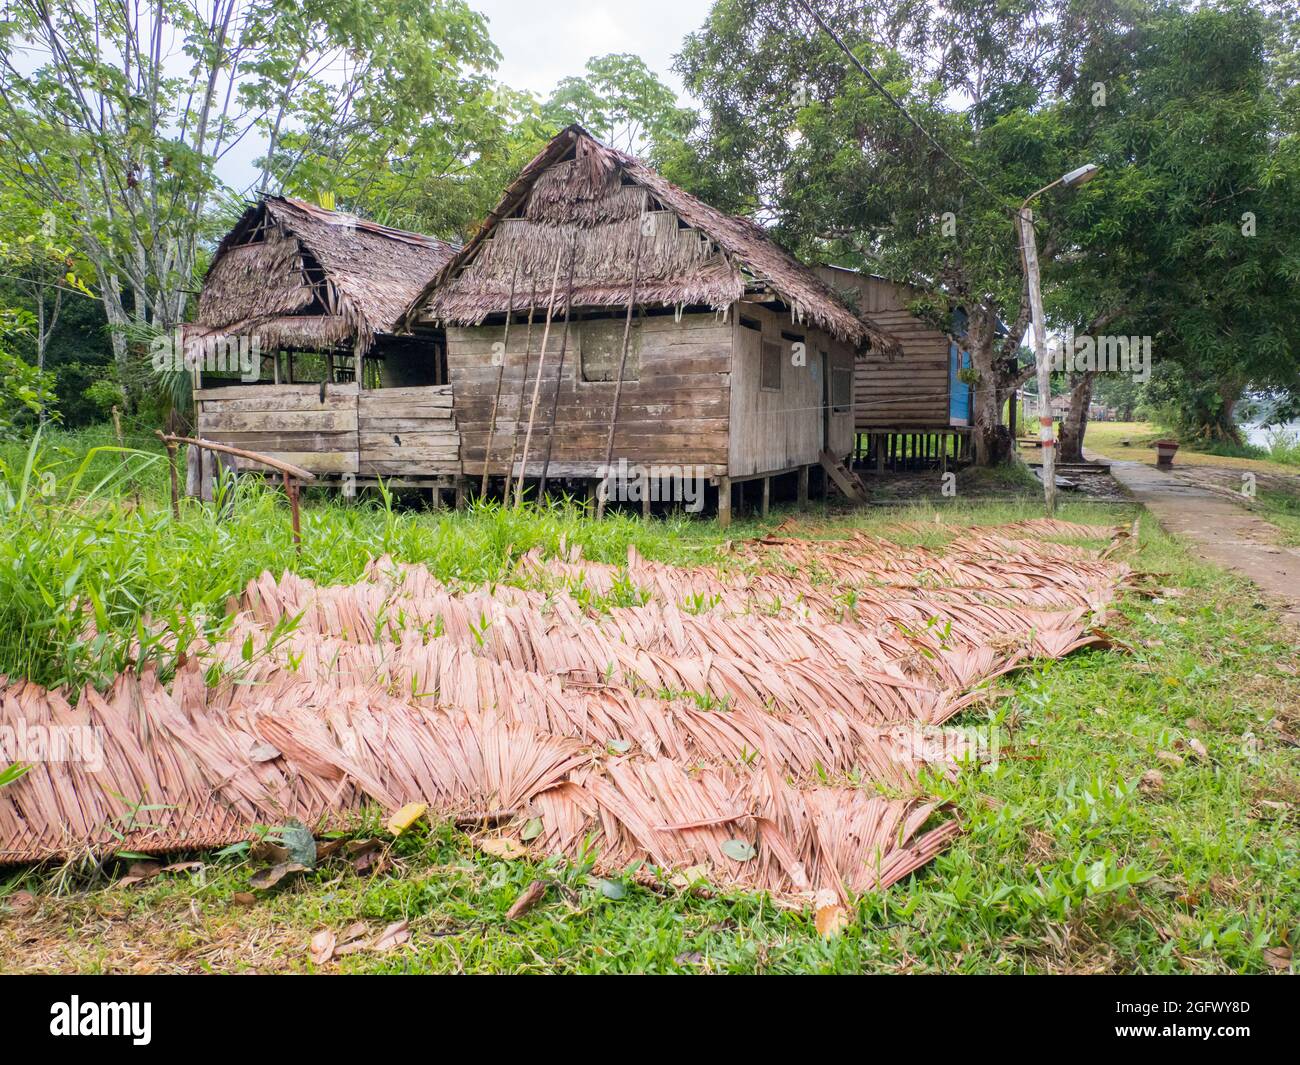 Dach aus einem Palmenblatt, um Holzhäuser zu bedecken - trocknet im Dorf im Amazonaswald aus. Amazonien, Brasilien, Südamerika. Stockfoto